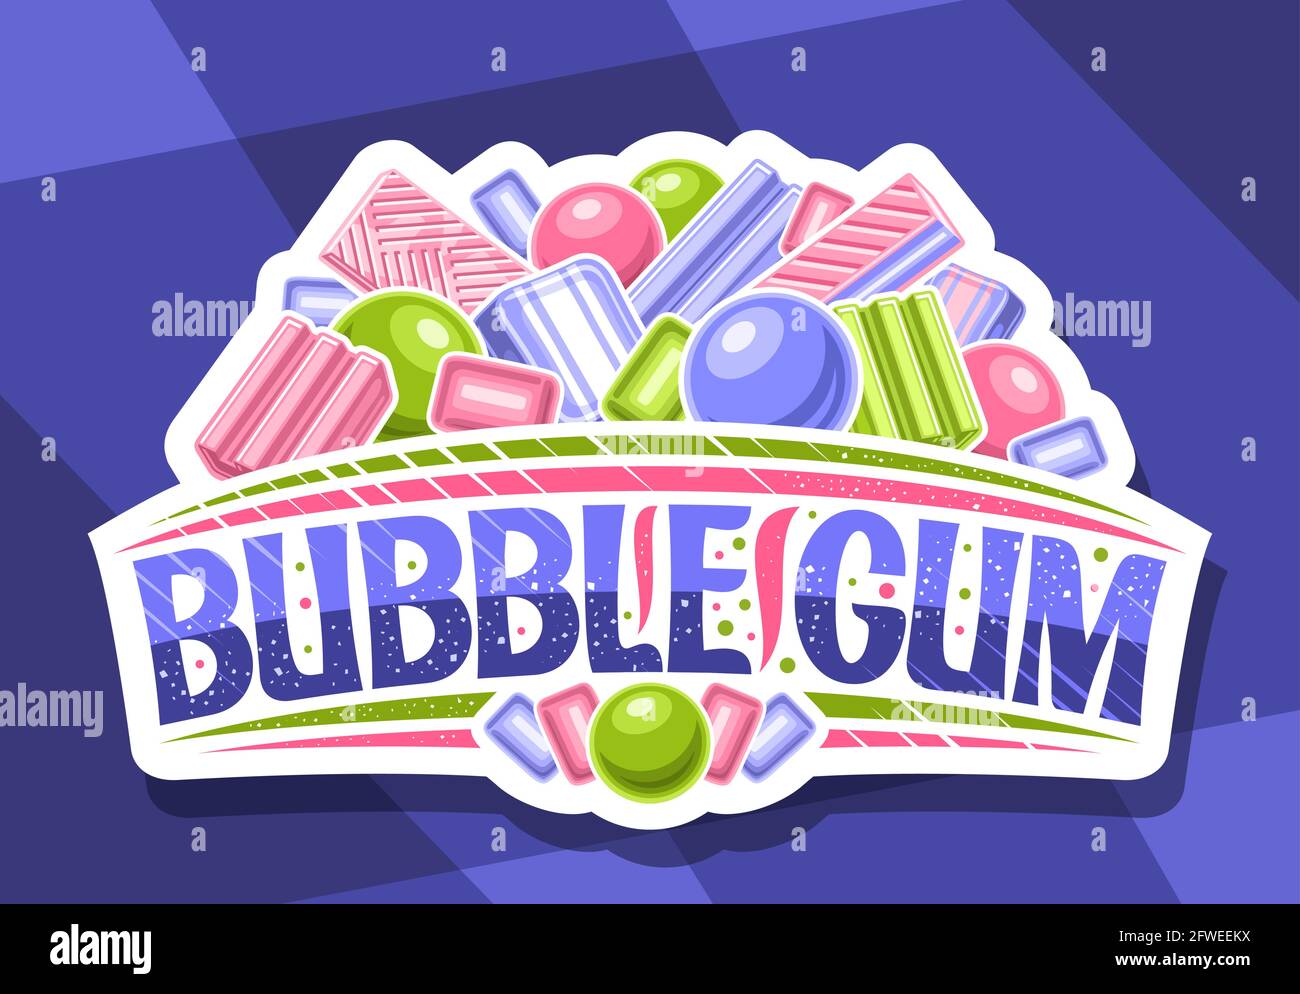 Vektor-Logo für Bubble Gum, dekorativ geschnittenes Papier Schild mit Abbildung von verschiedenen bunten Bubblegums und Süßigkeiten, weißes Abzeichen mit einzigartigen Pinsel Stock Vektor